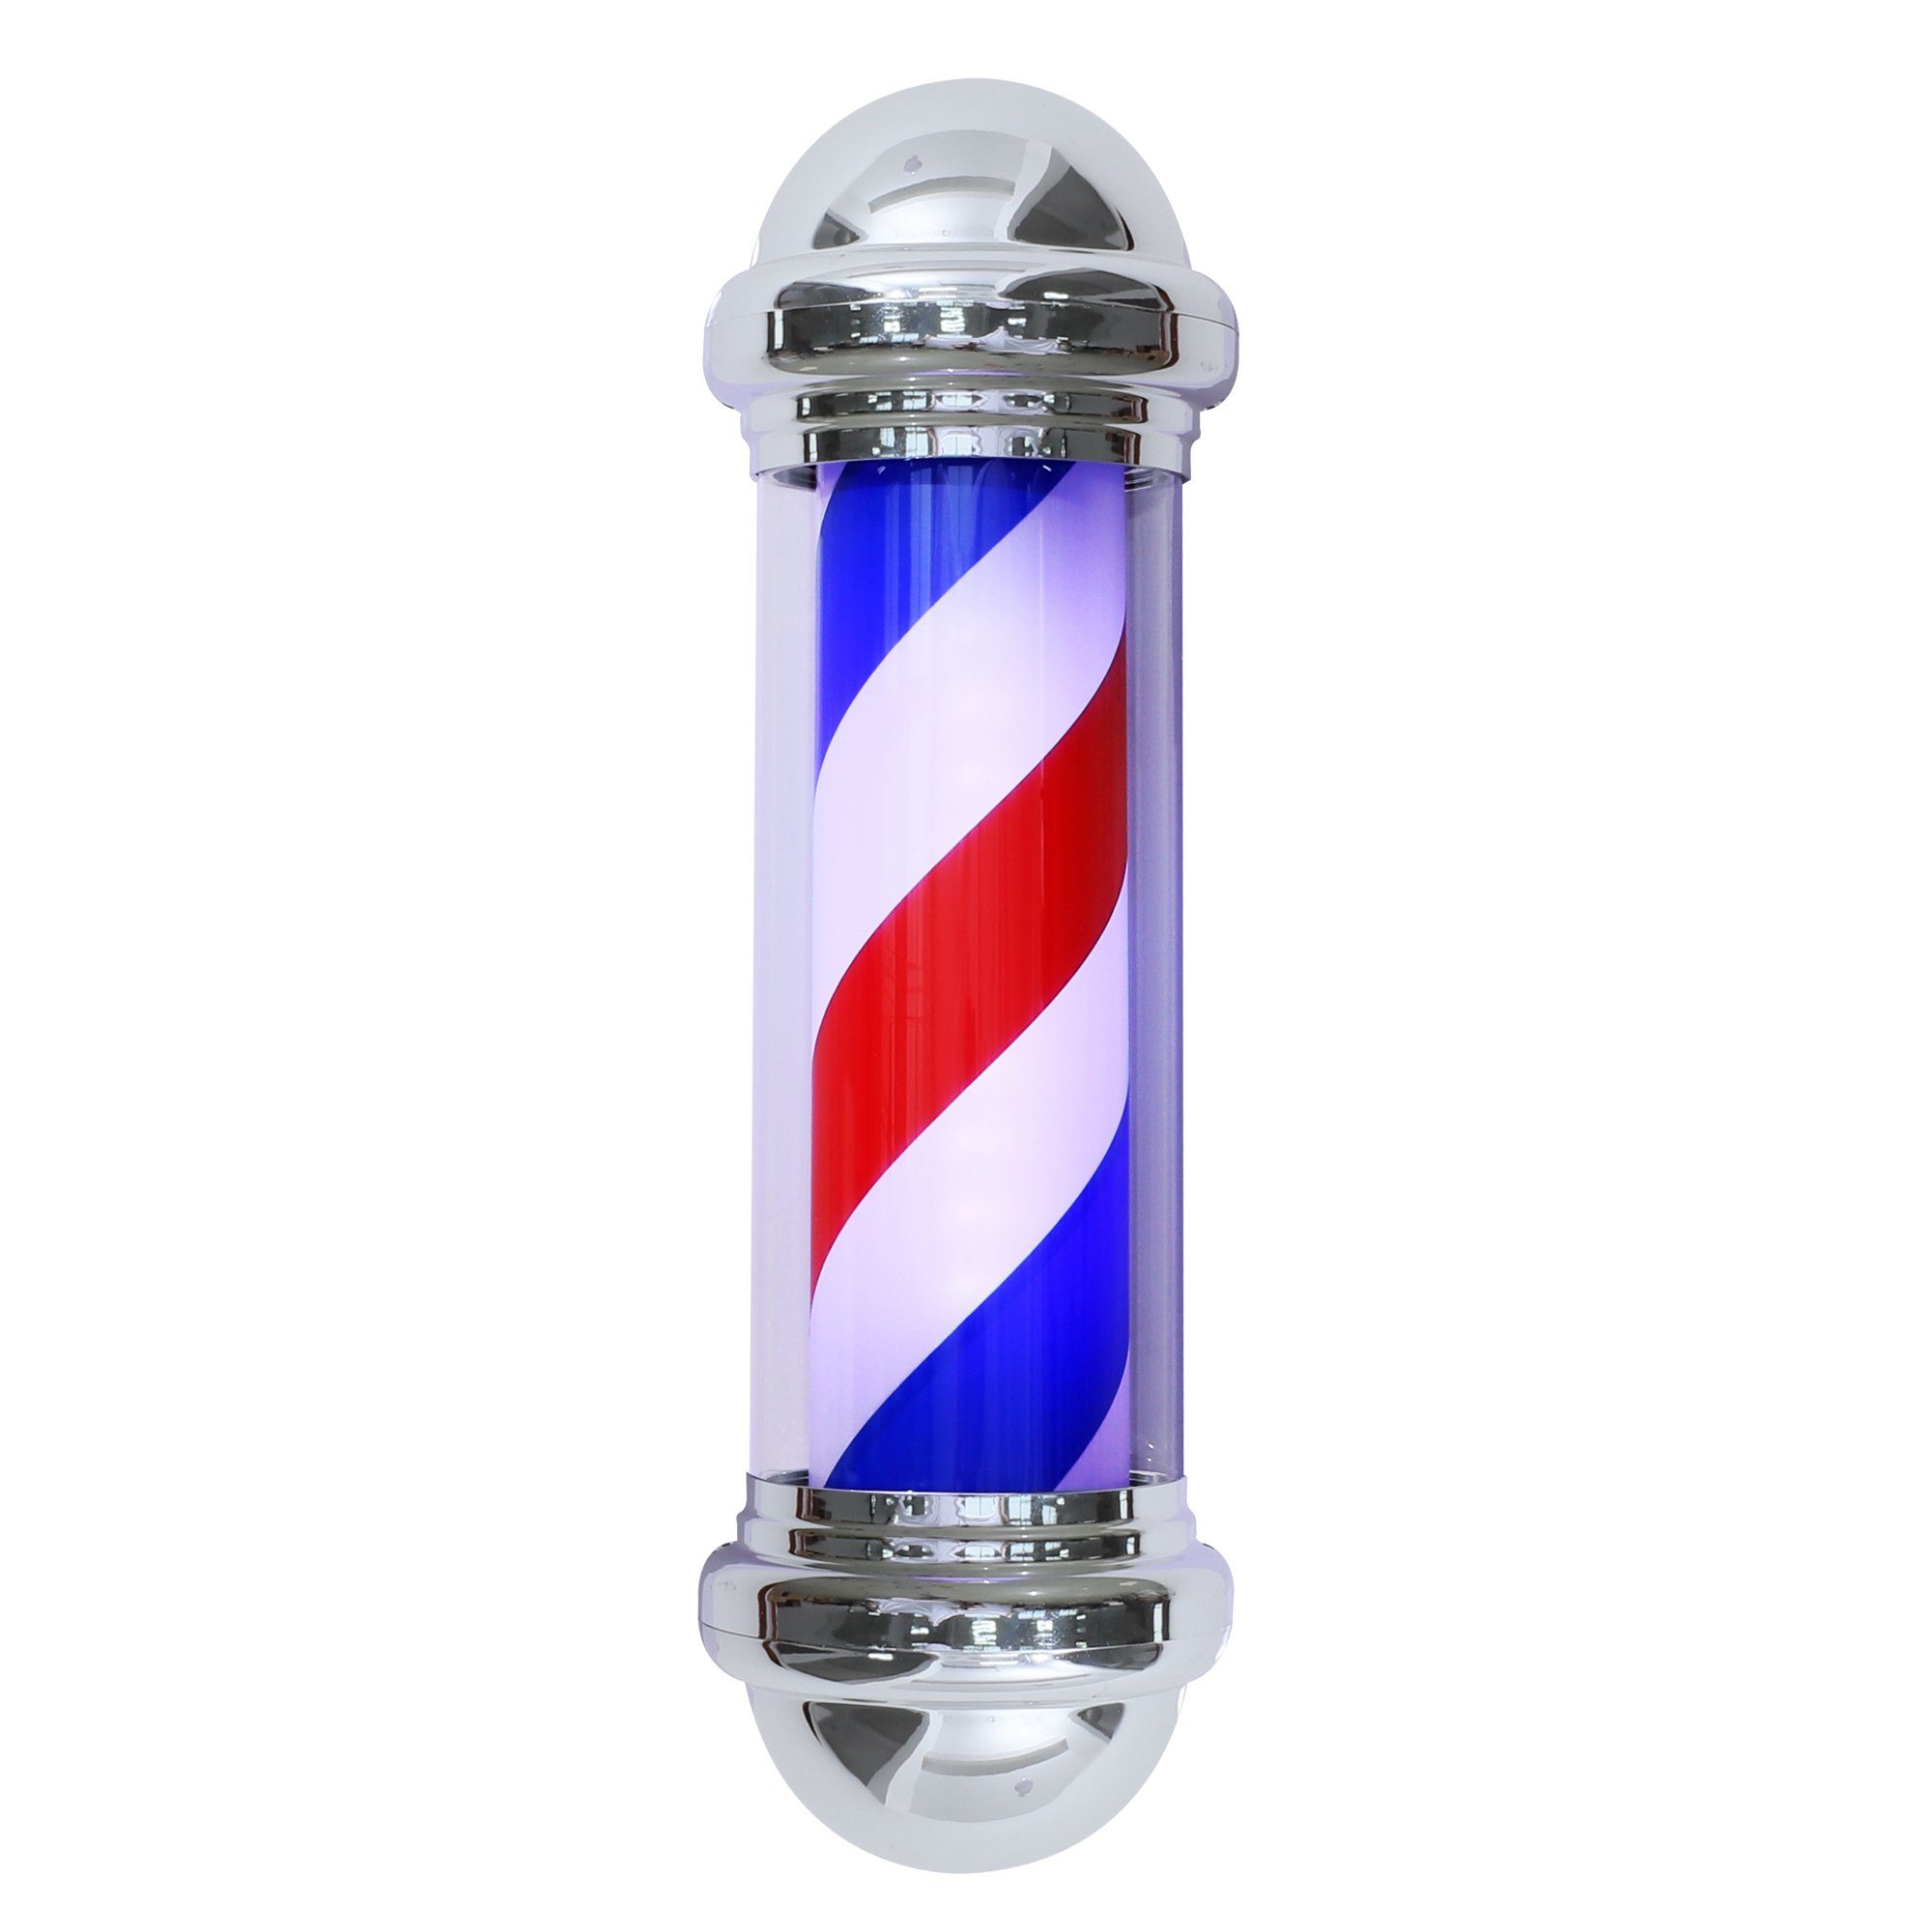 Barberpub Außen-Stehlampe Barberpub Barber-Pole Barbershop-Säule Barbierstab x 20 20 L016B, x75 cm drehbar